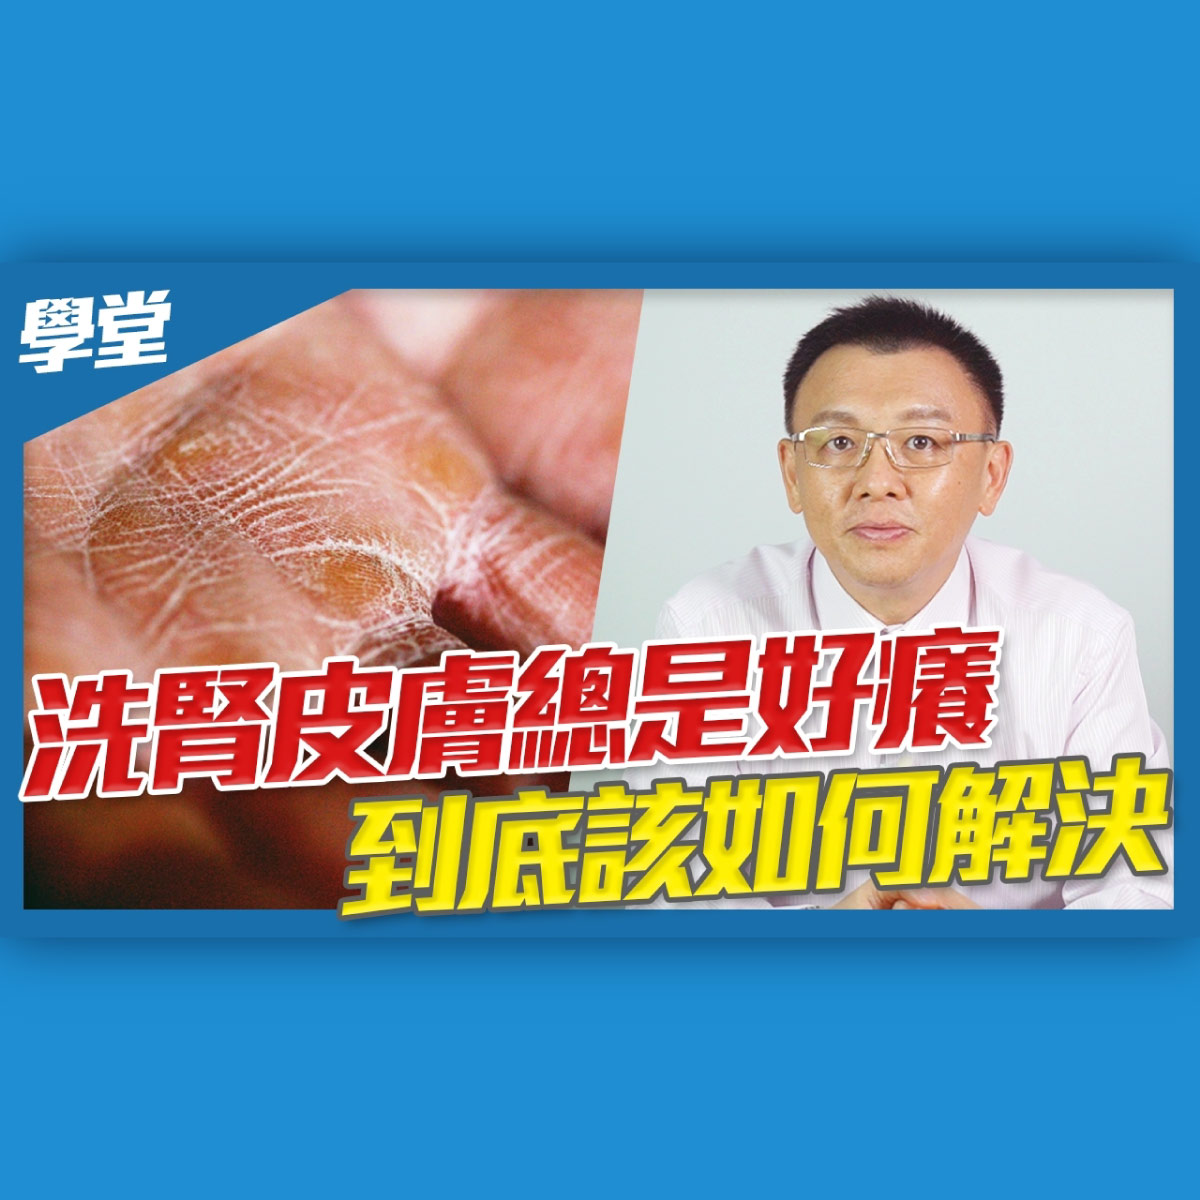 vanicream朱總經理來談洗腎皮膚癢該如何解決，詳情請看影片